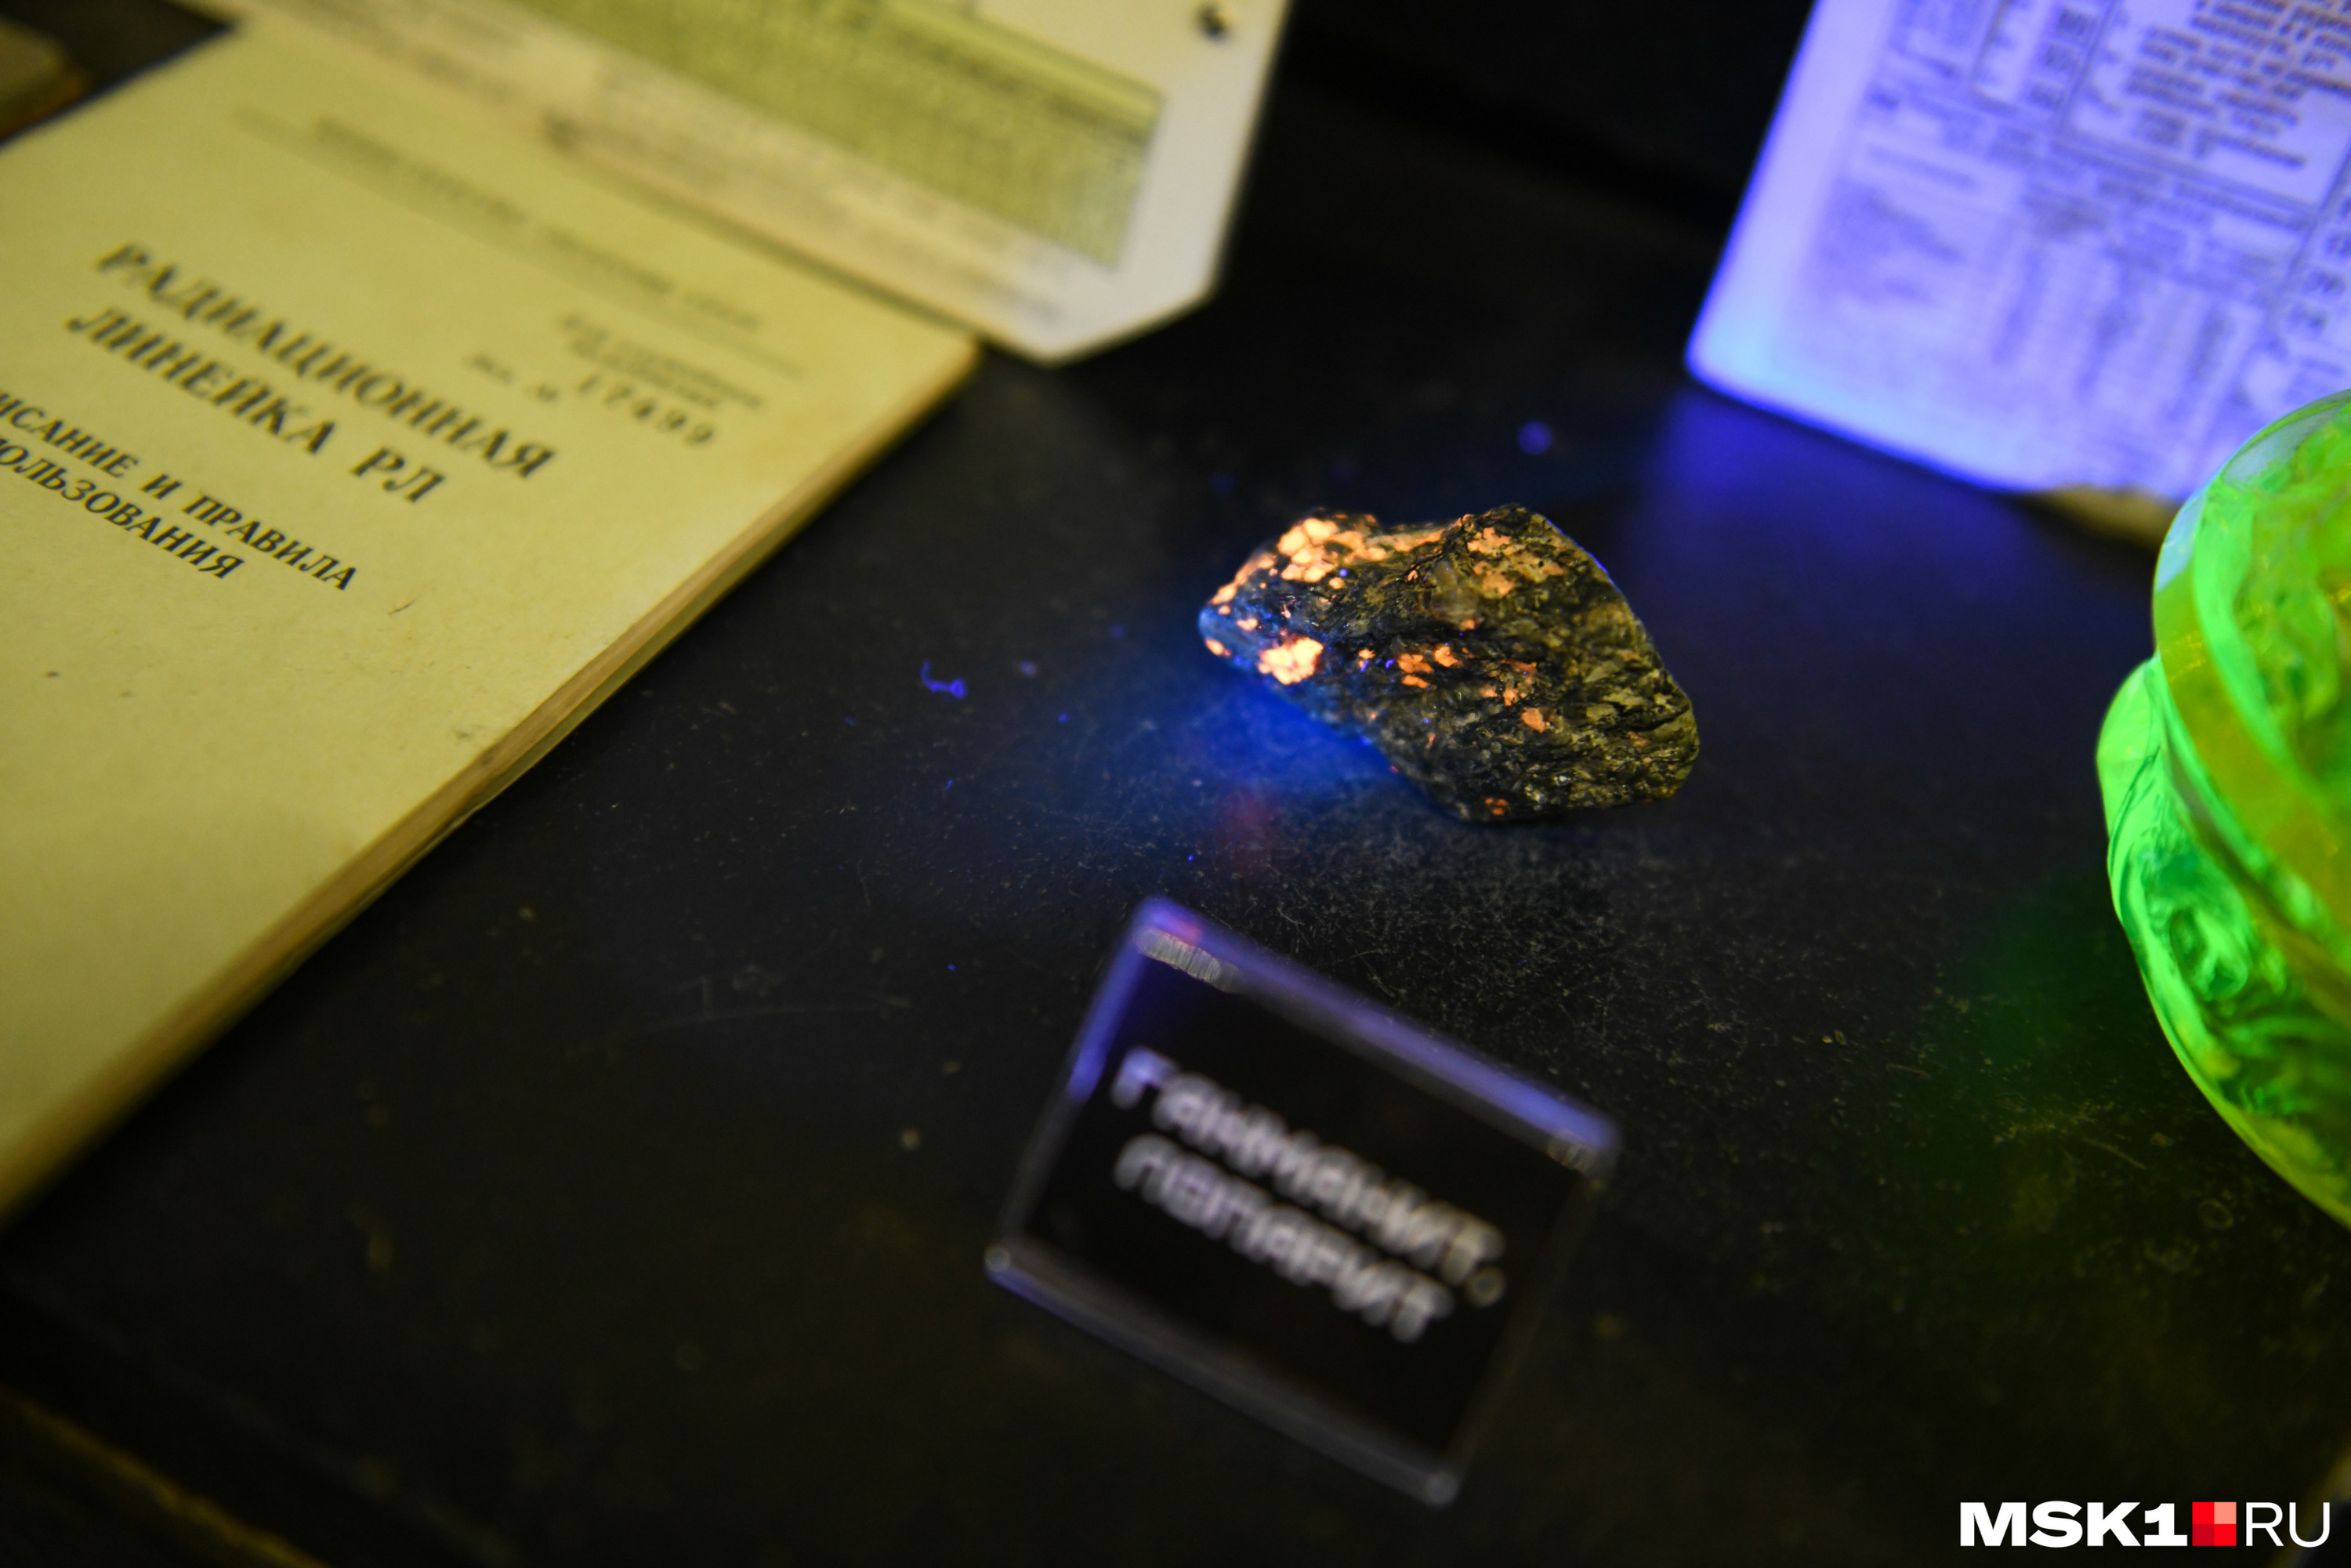 Образец слаборадиоактивного лопарита и гакманита (разновидность содалита) красиво флуоресцирует в УФ-свете (что также часто свойственно для радиоактивных минералов). А в правой части кадра — сахарница из уранового стекла светится в УФ-лучах